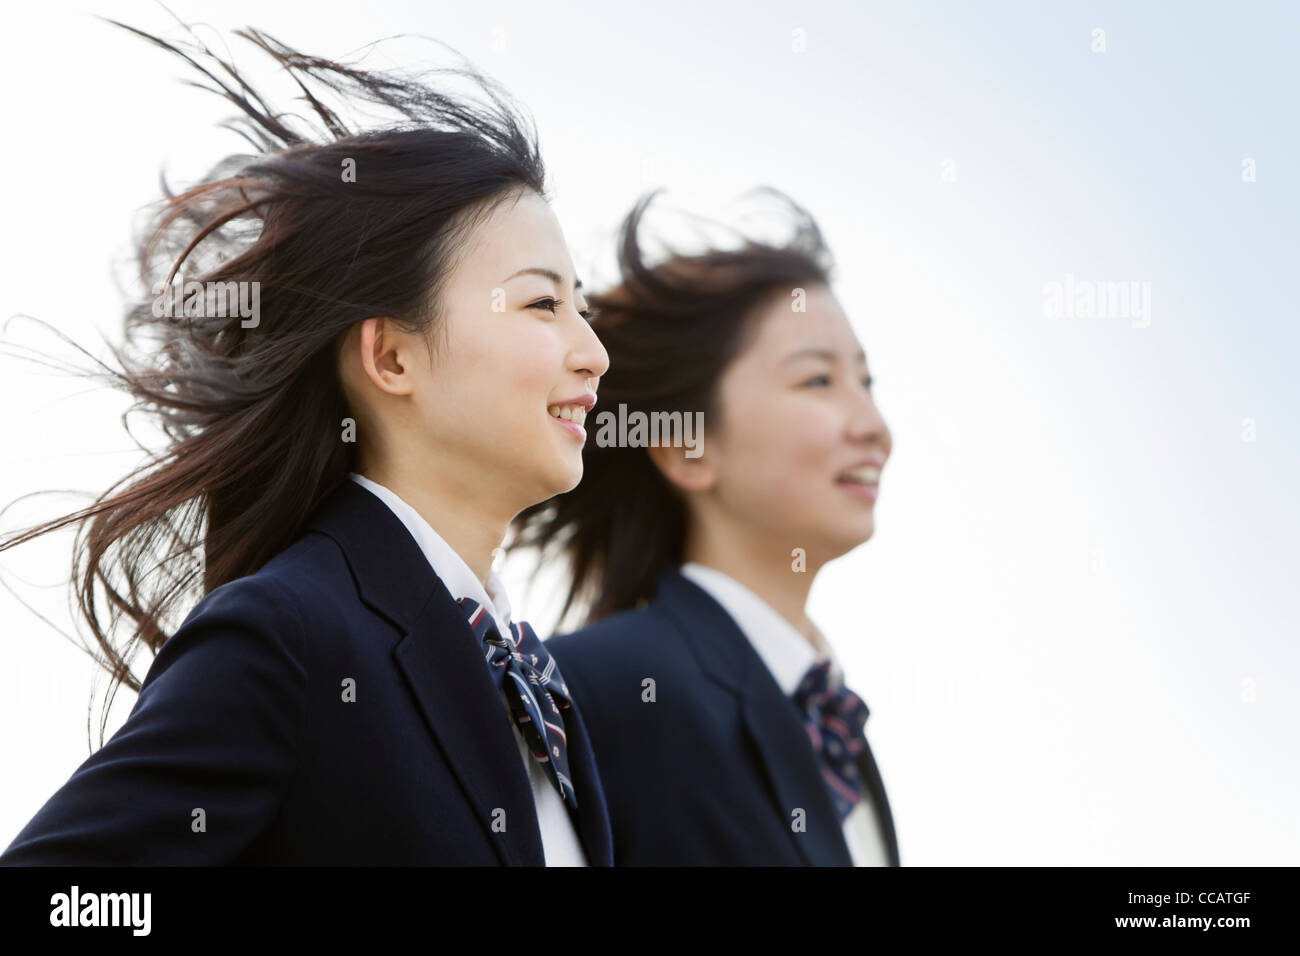 Two high school girls running Stock Photo